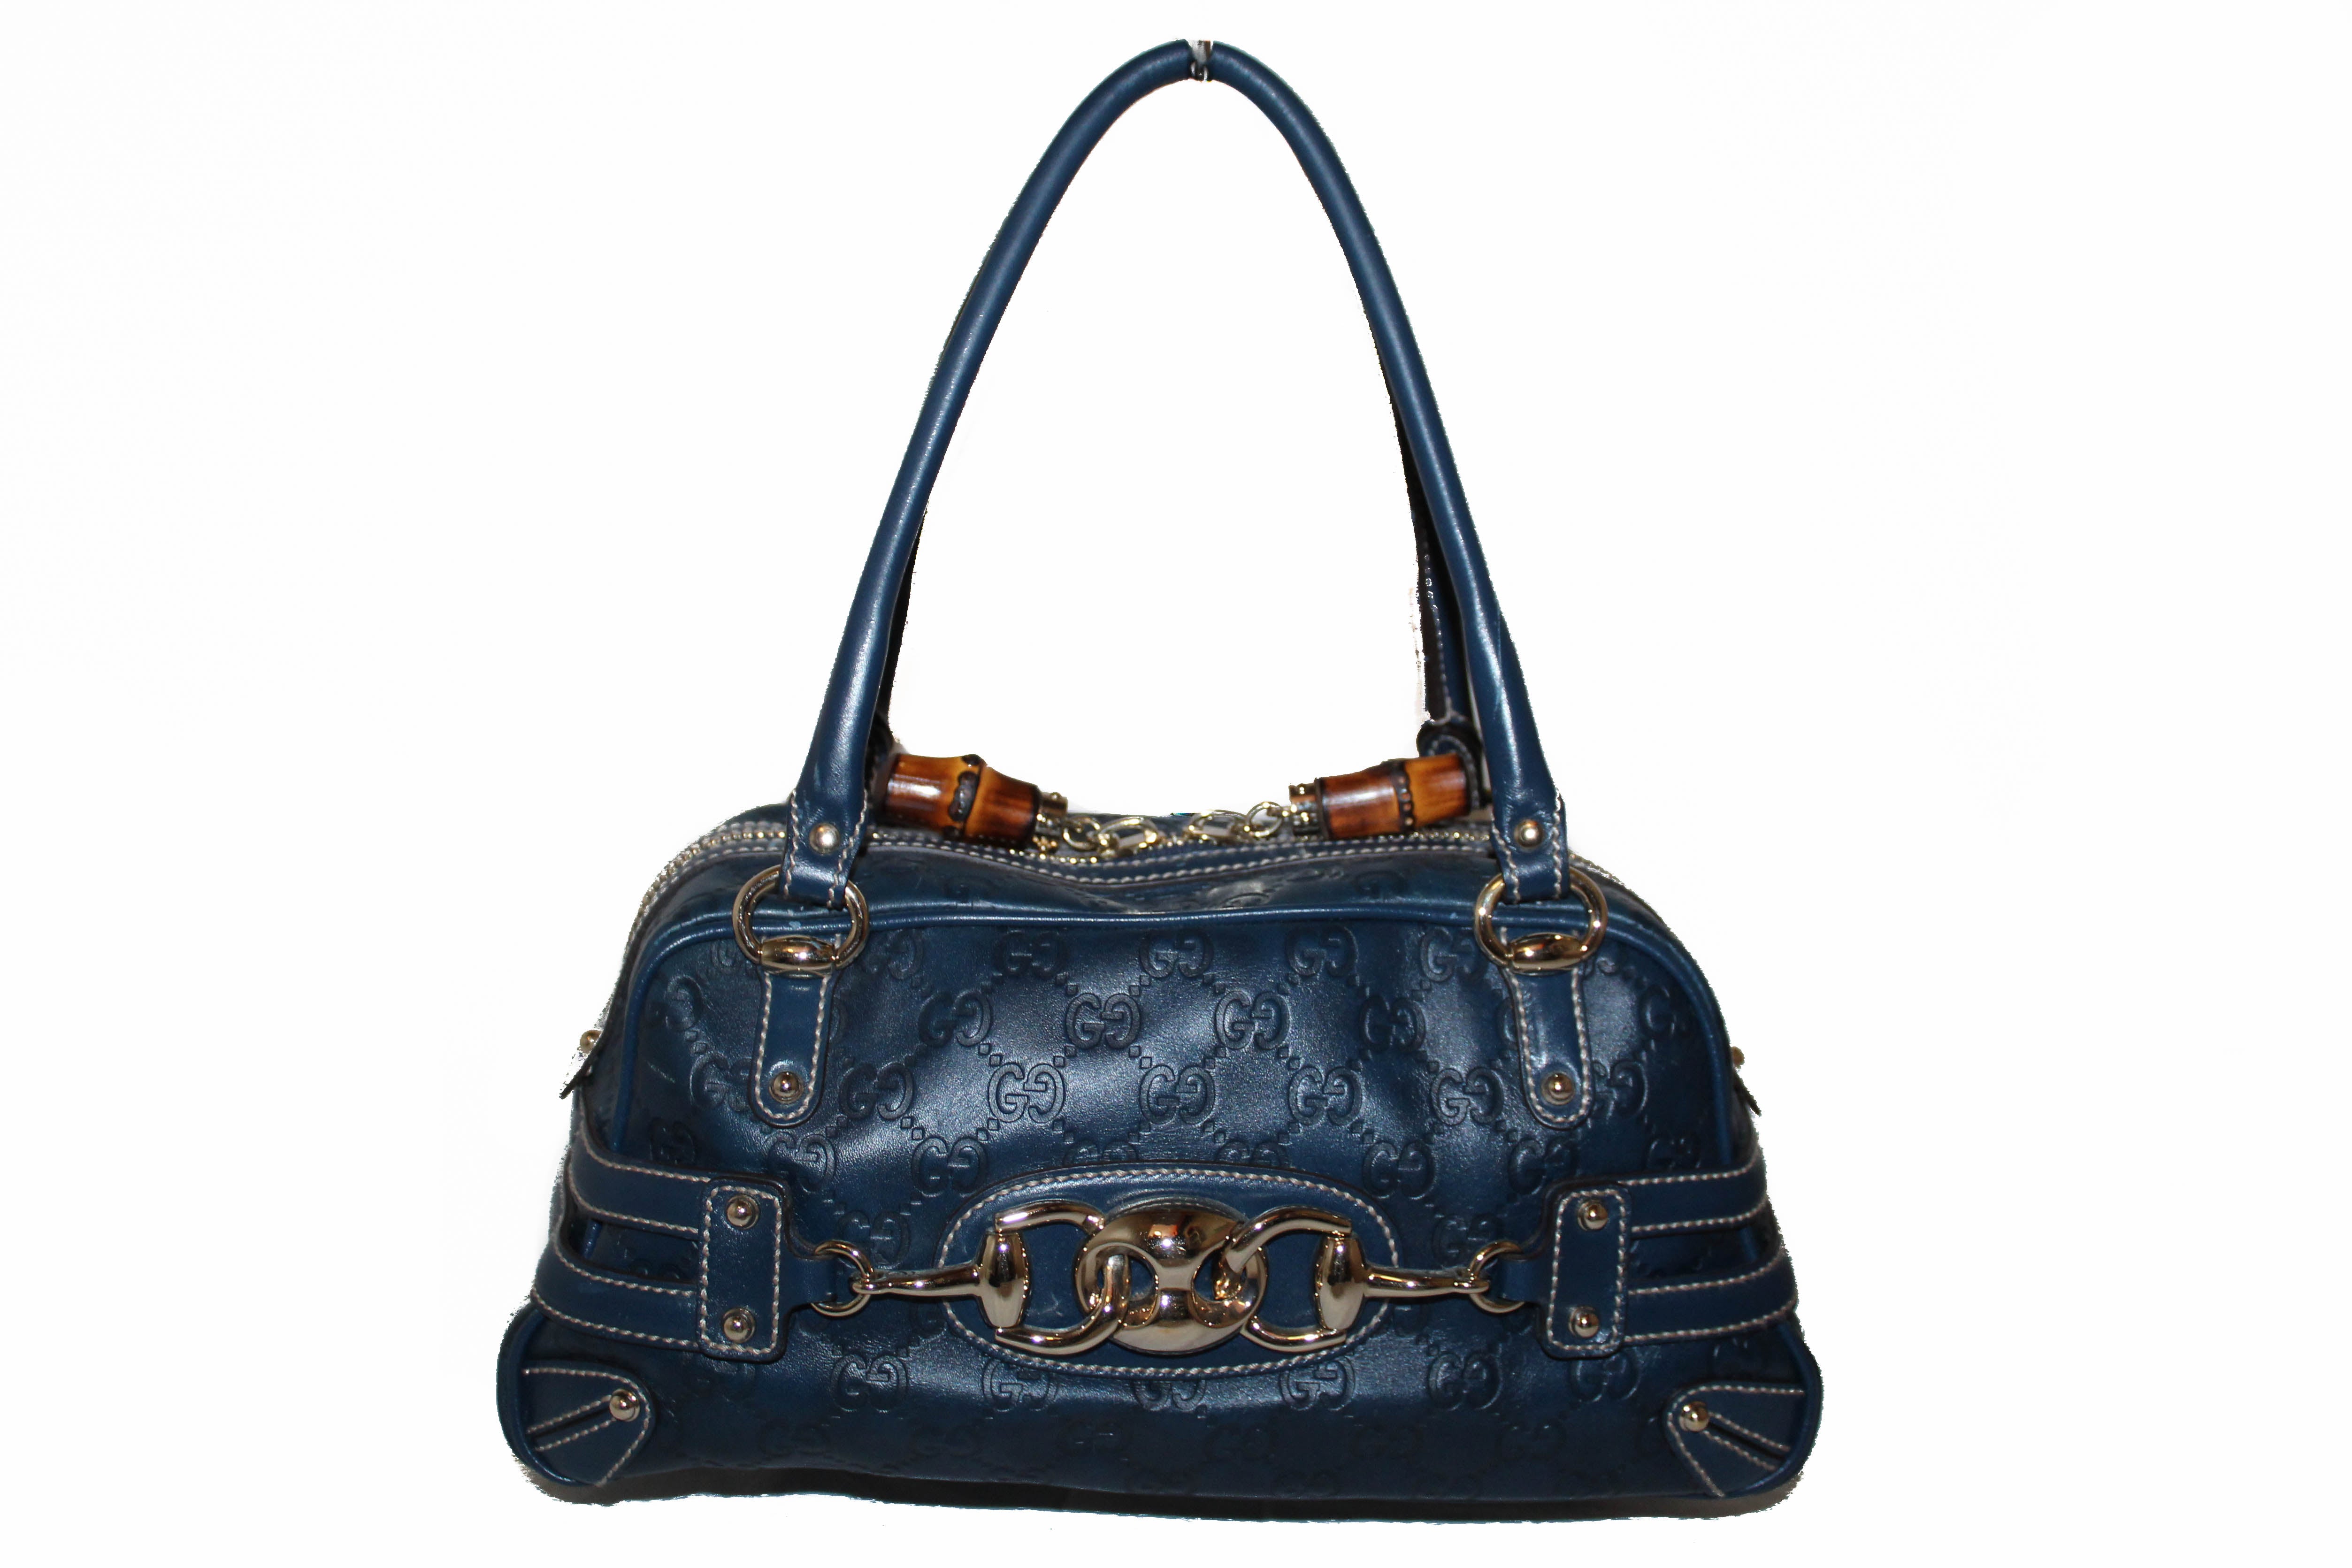 Gucci Guccissima Bosten Bag in Dark Blue Leather